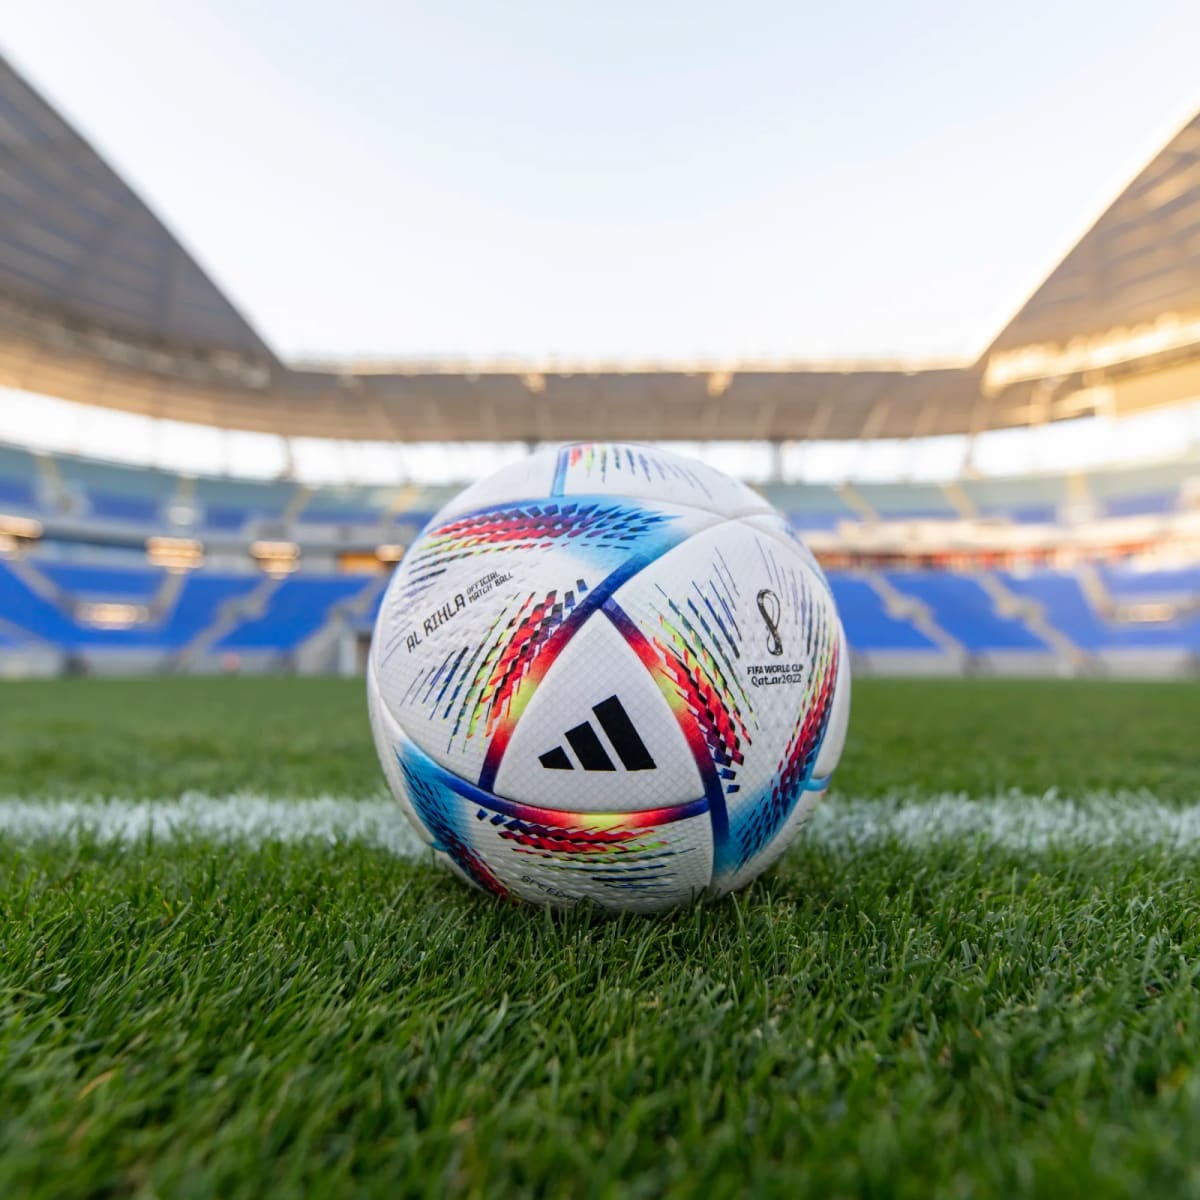 Al Rihla FIFA World Cup Qatar 2022 ball unveiled by adidas - Futbol on  FanNation